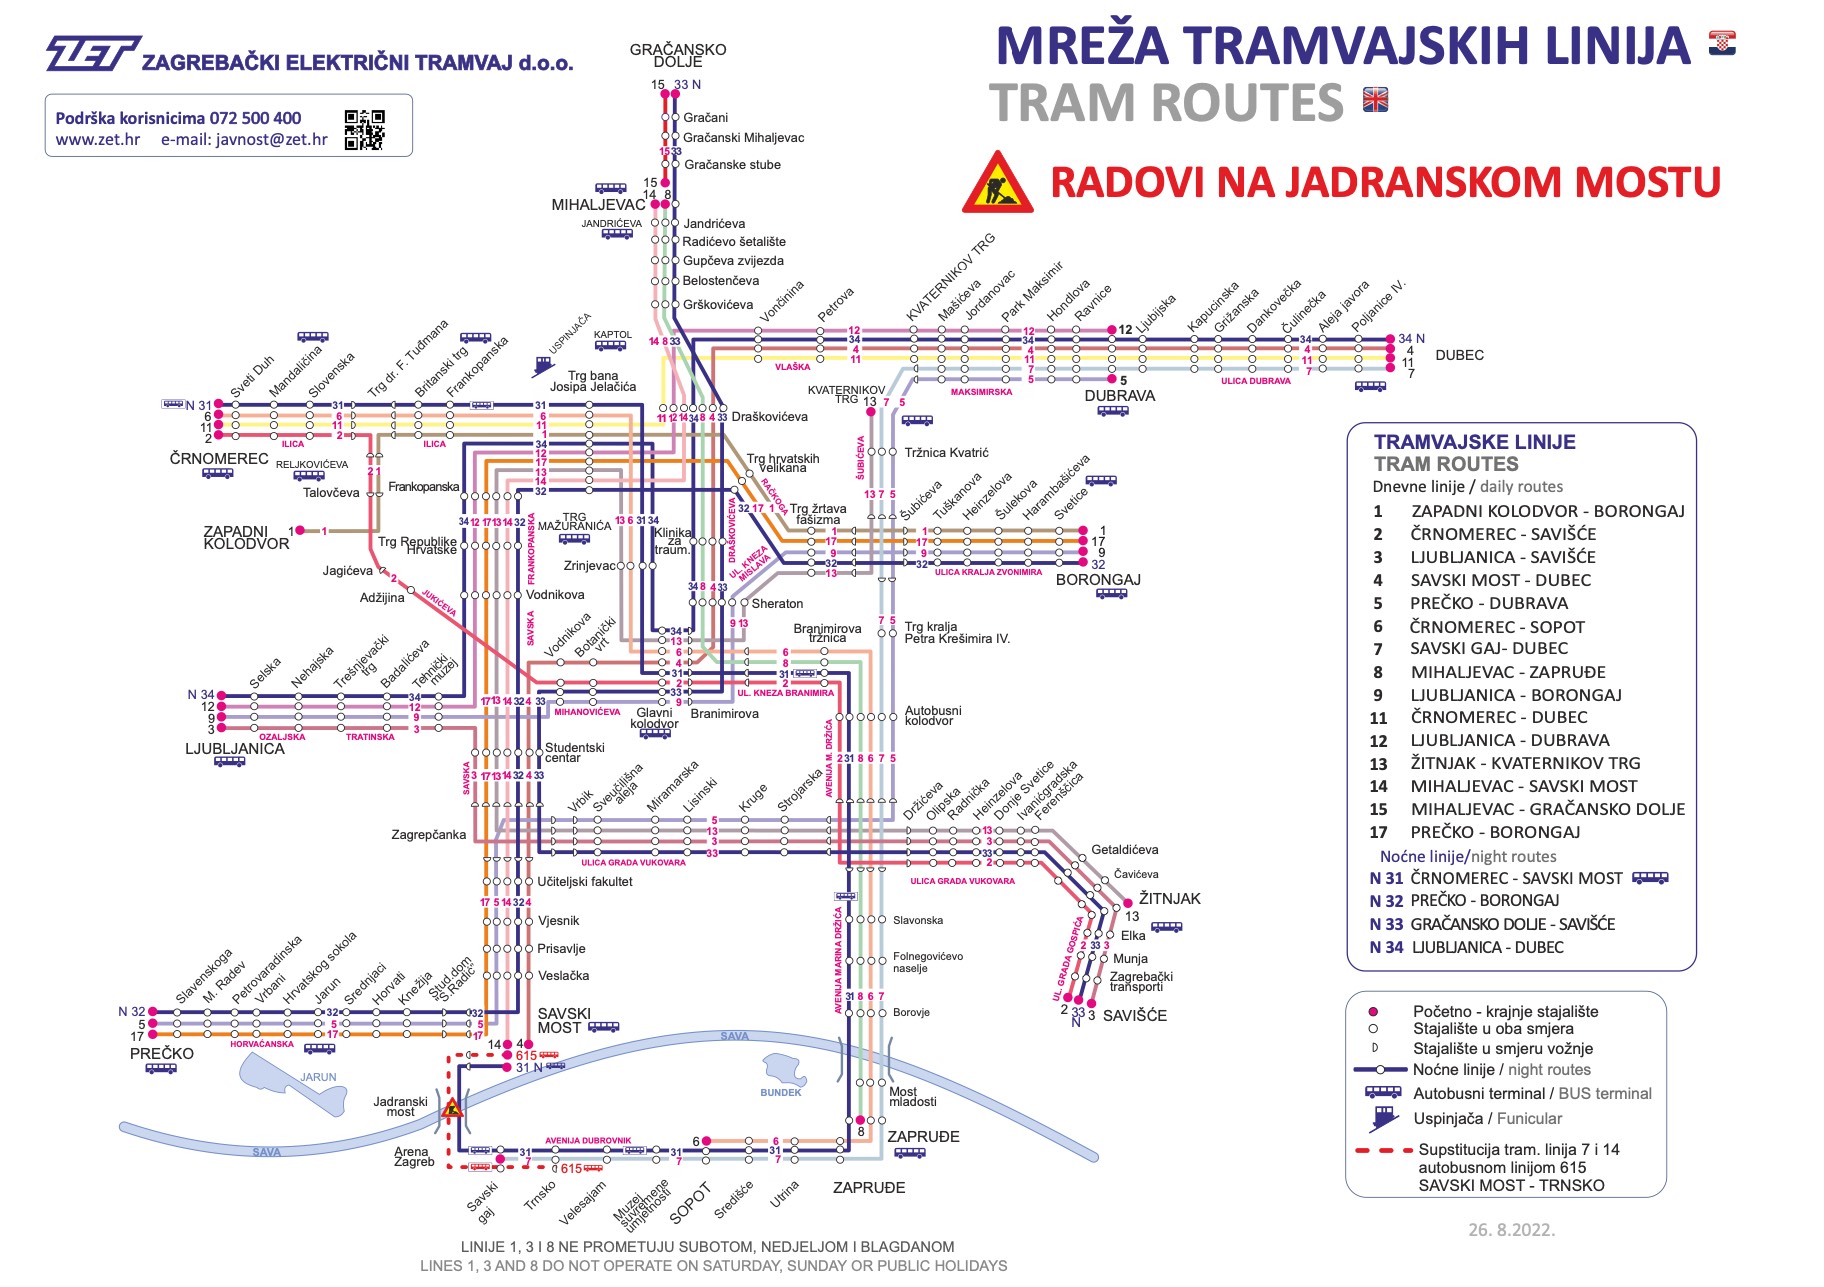 zet-zagreb-lininverkehr-tram-bahn-2022-aktuell-tram-routes-